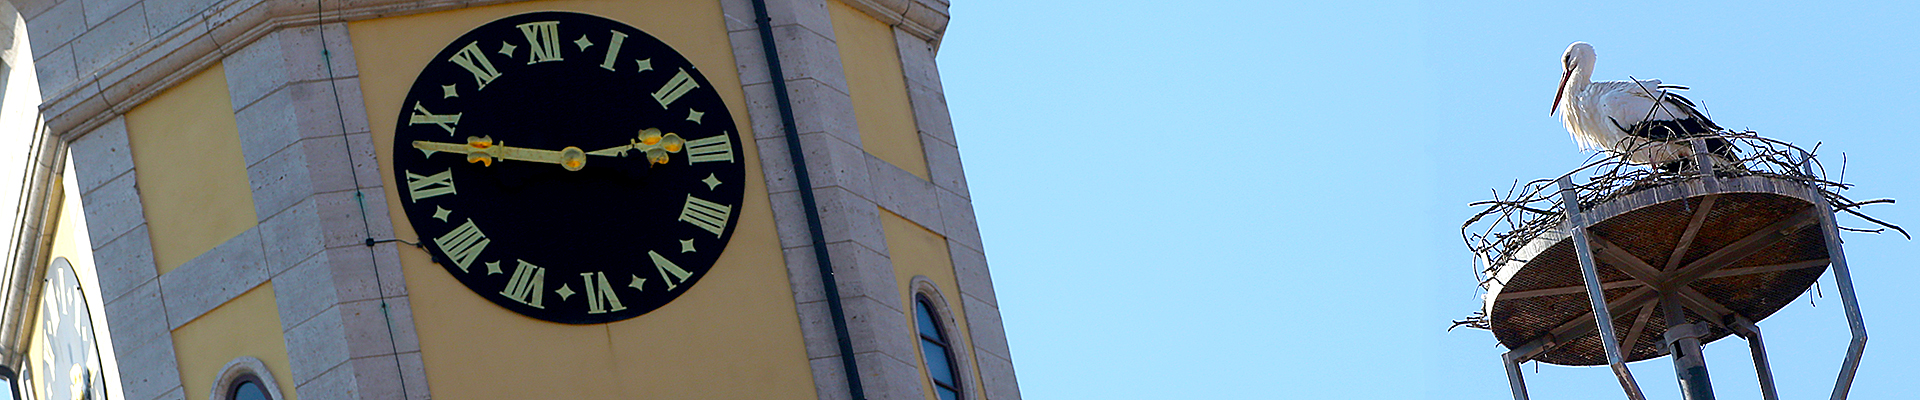 Ein Storch im Nest neben dem Rathausturm